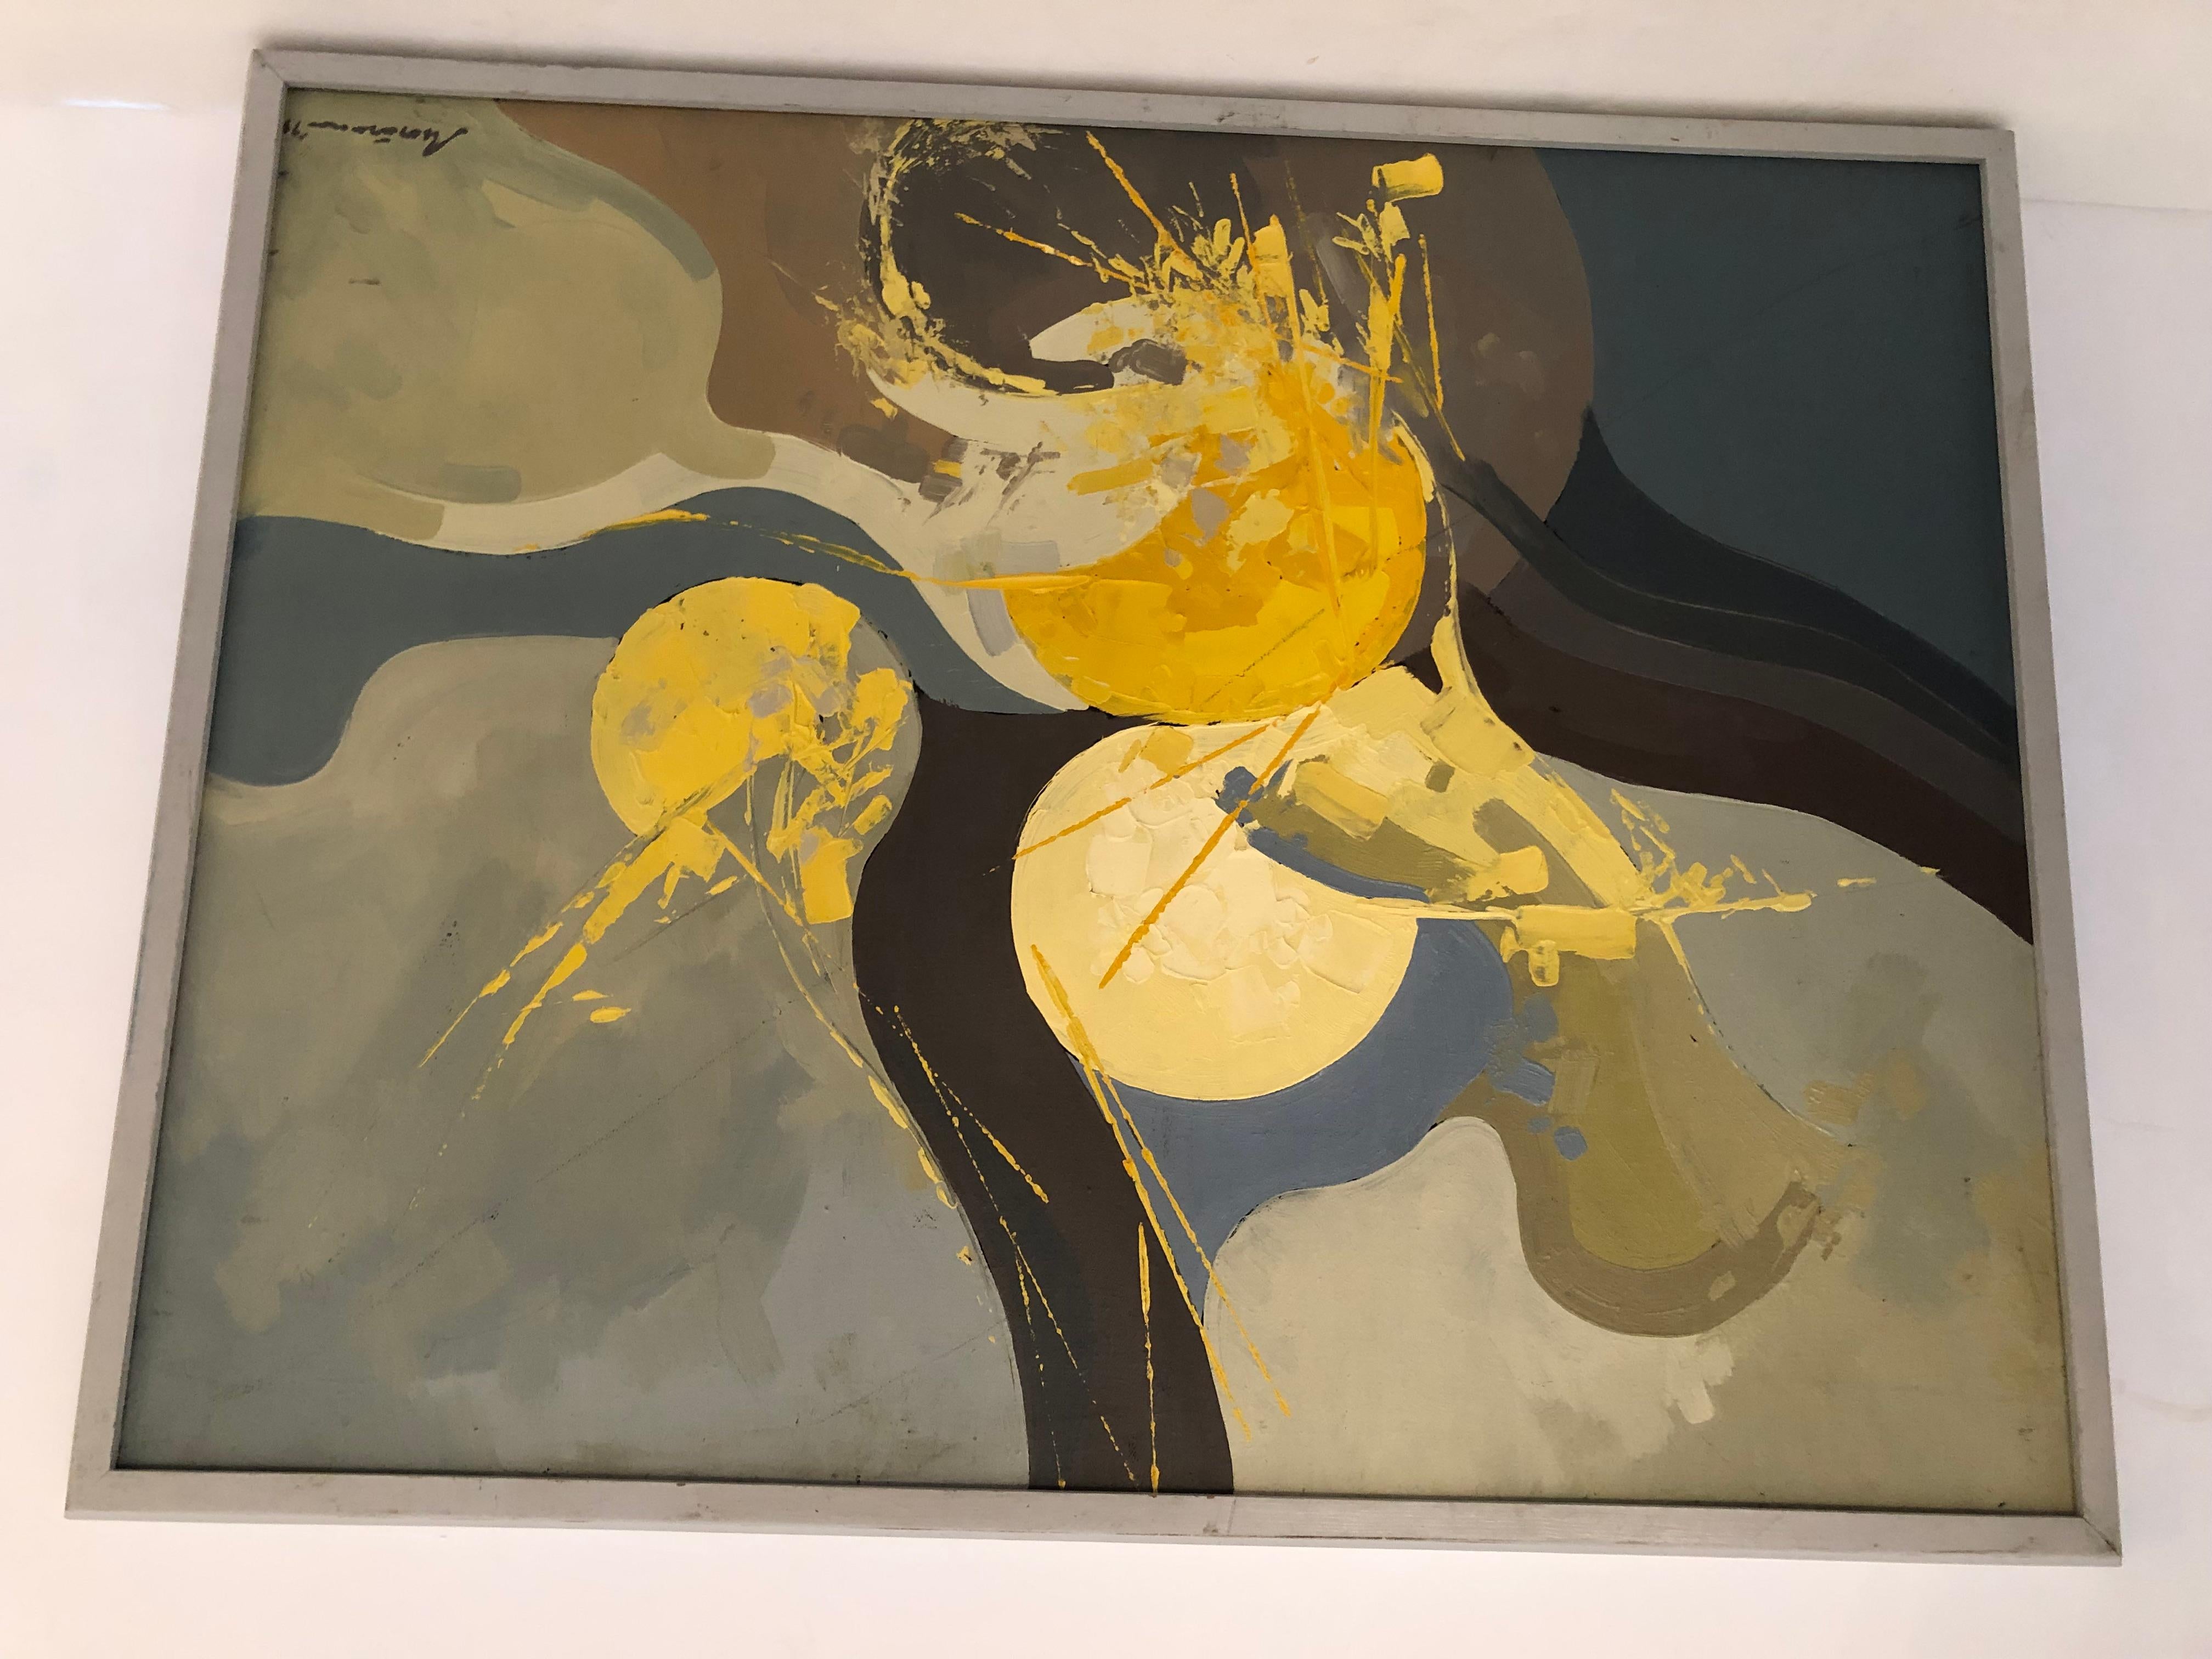 Stimmungsvolles und auffälliges abstraktes Gemälde mit gelbem Kreiselement, zufälligen Farbtropfen und einer wunderbaren Farbpalette aus Olivgrün, Hellgrau und Kohle.